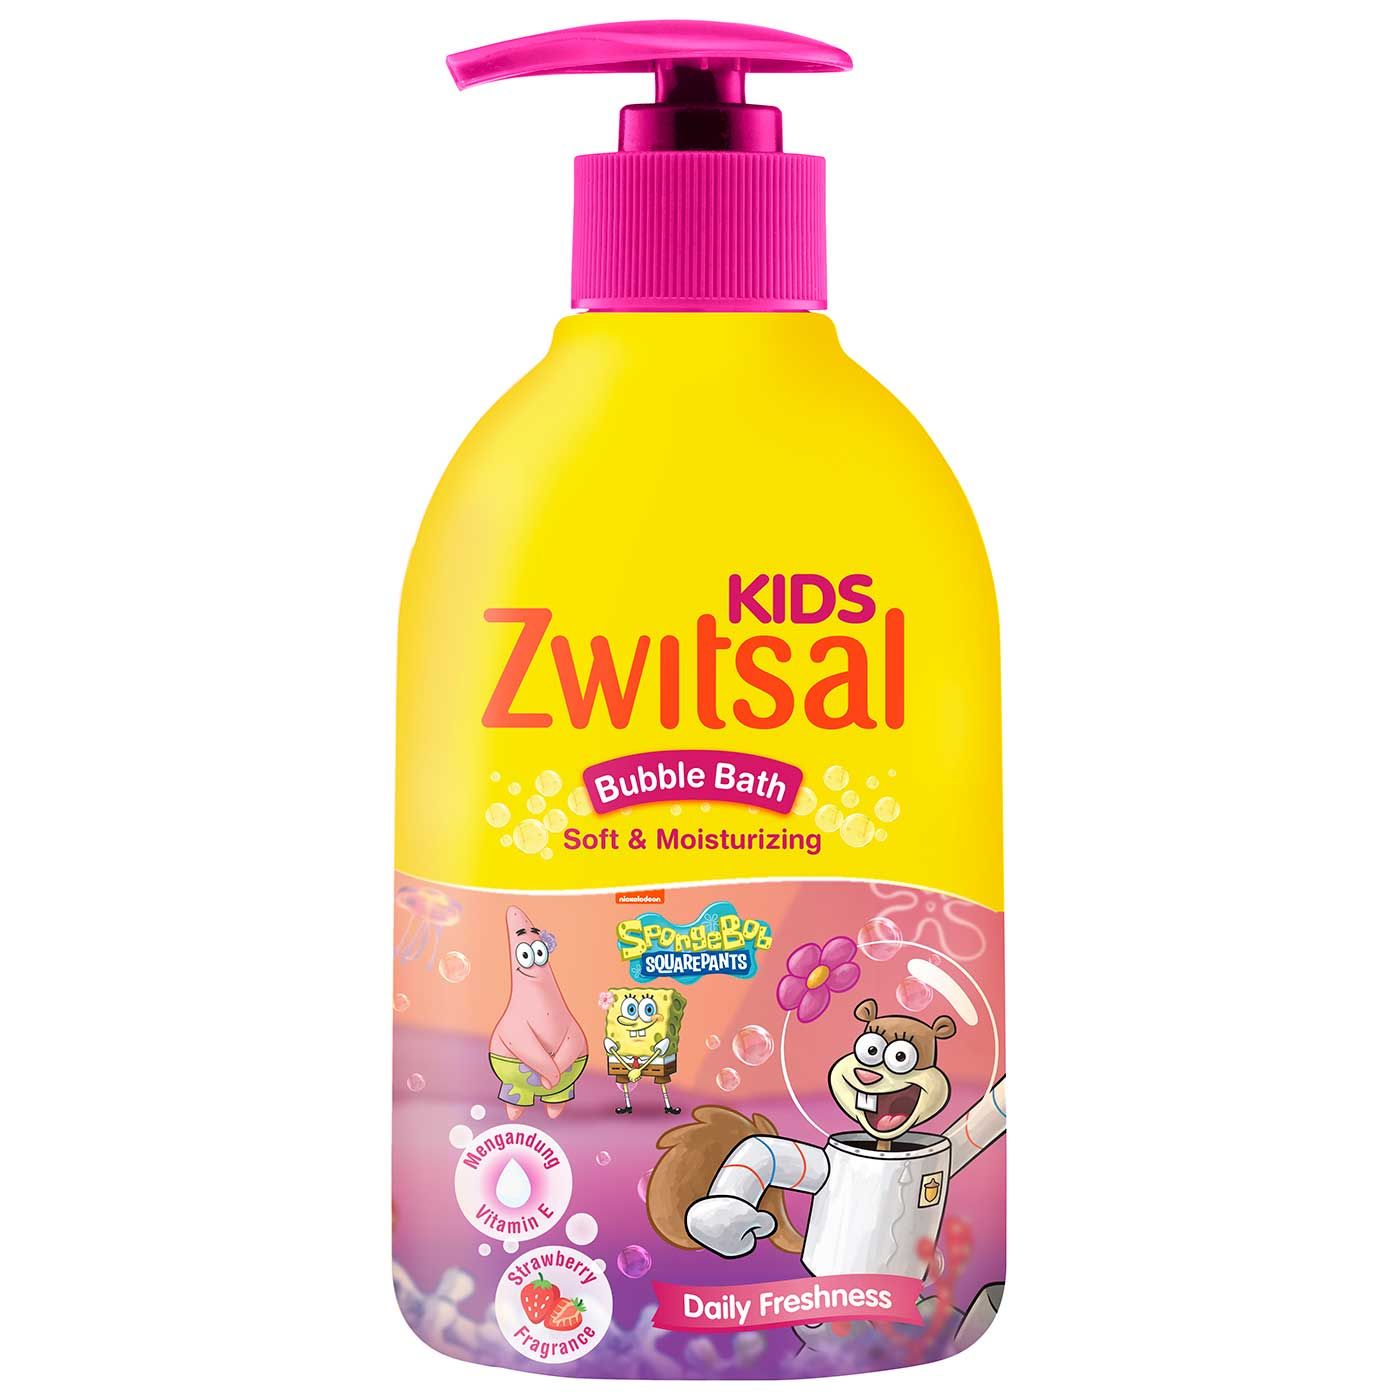 Zwitsal Kids Bubble Bath Pink Soft & Moisturizing 280ml - 3